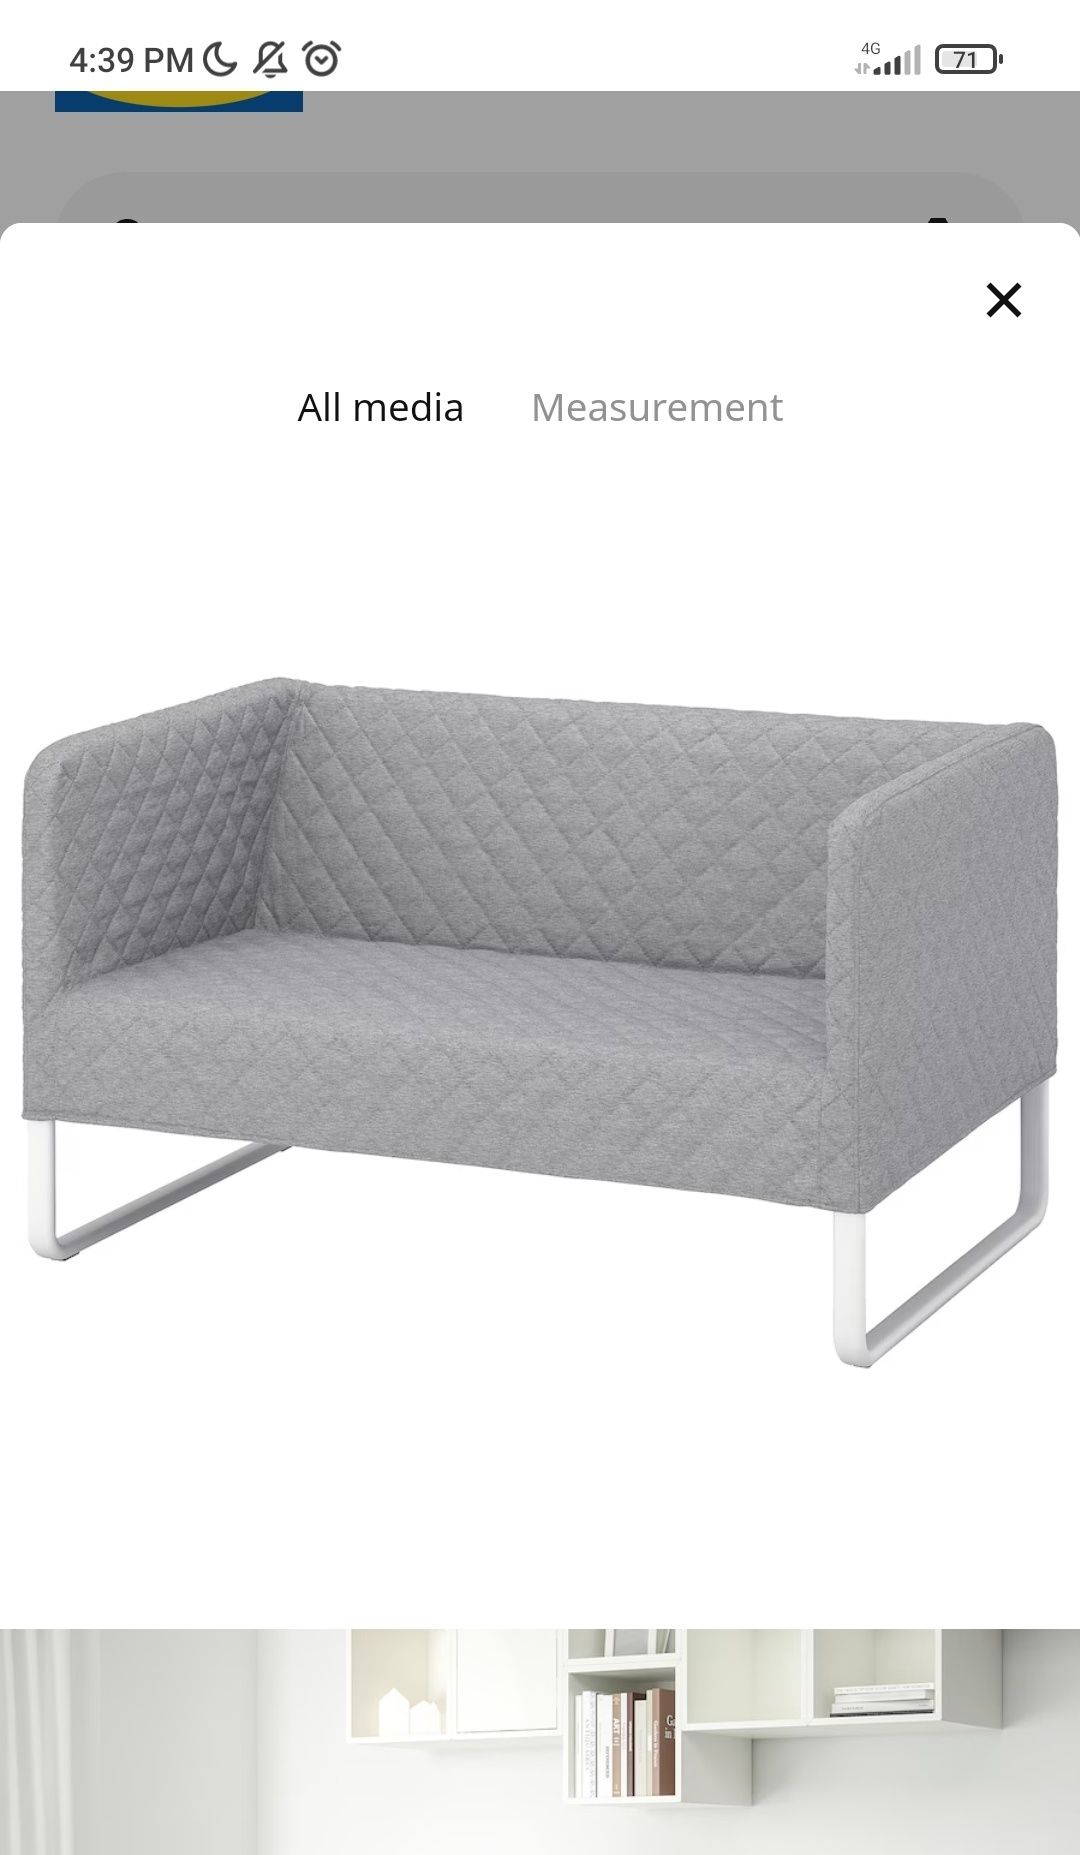 Canapea IKEA impecabila